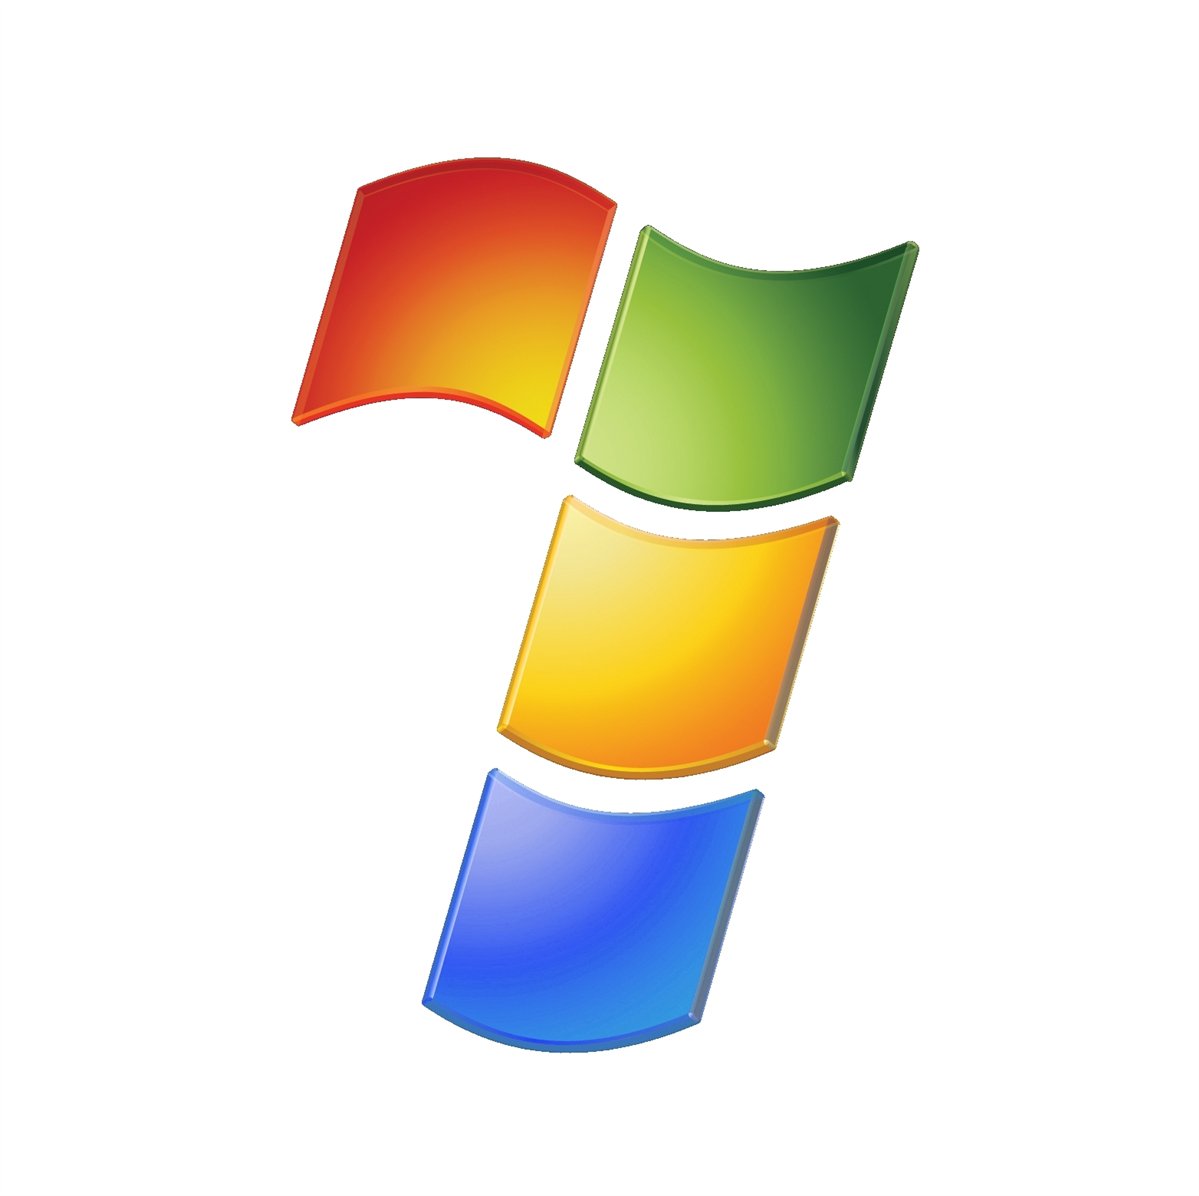 Windows 7 despegará antes que Vista, según Intel